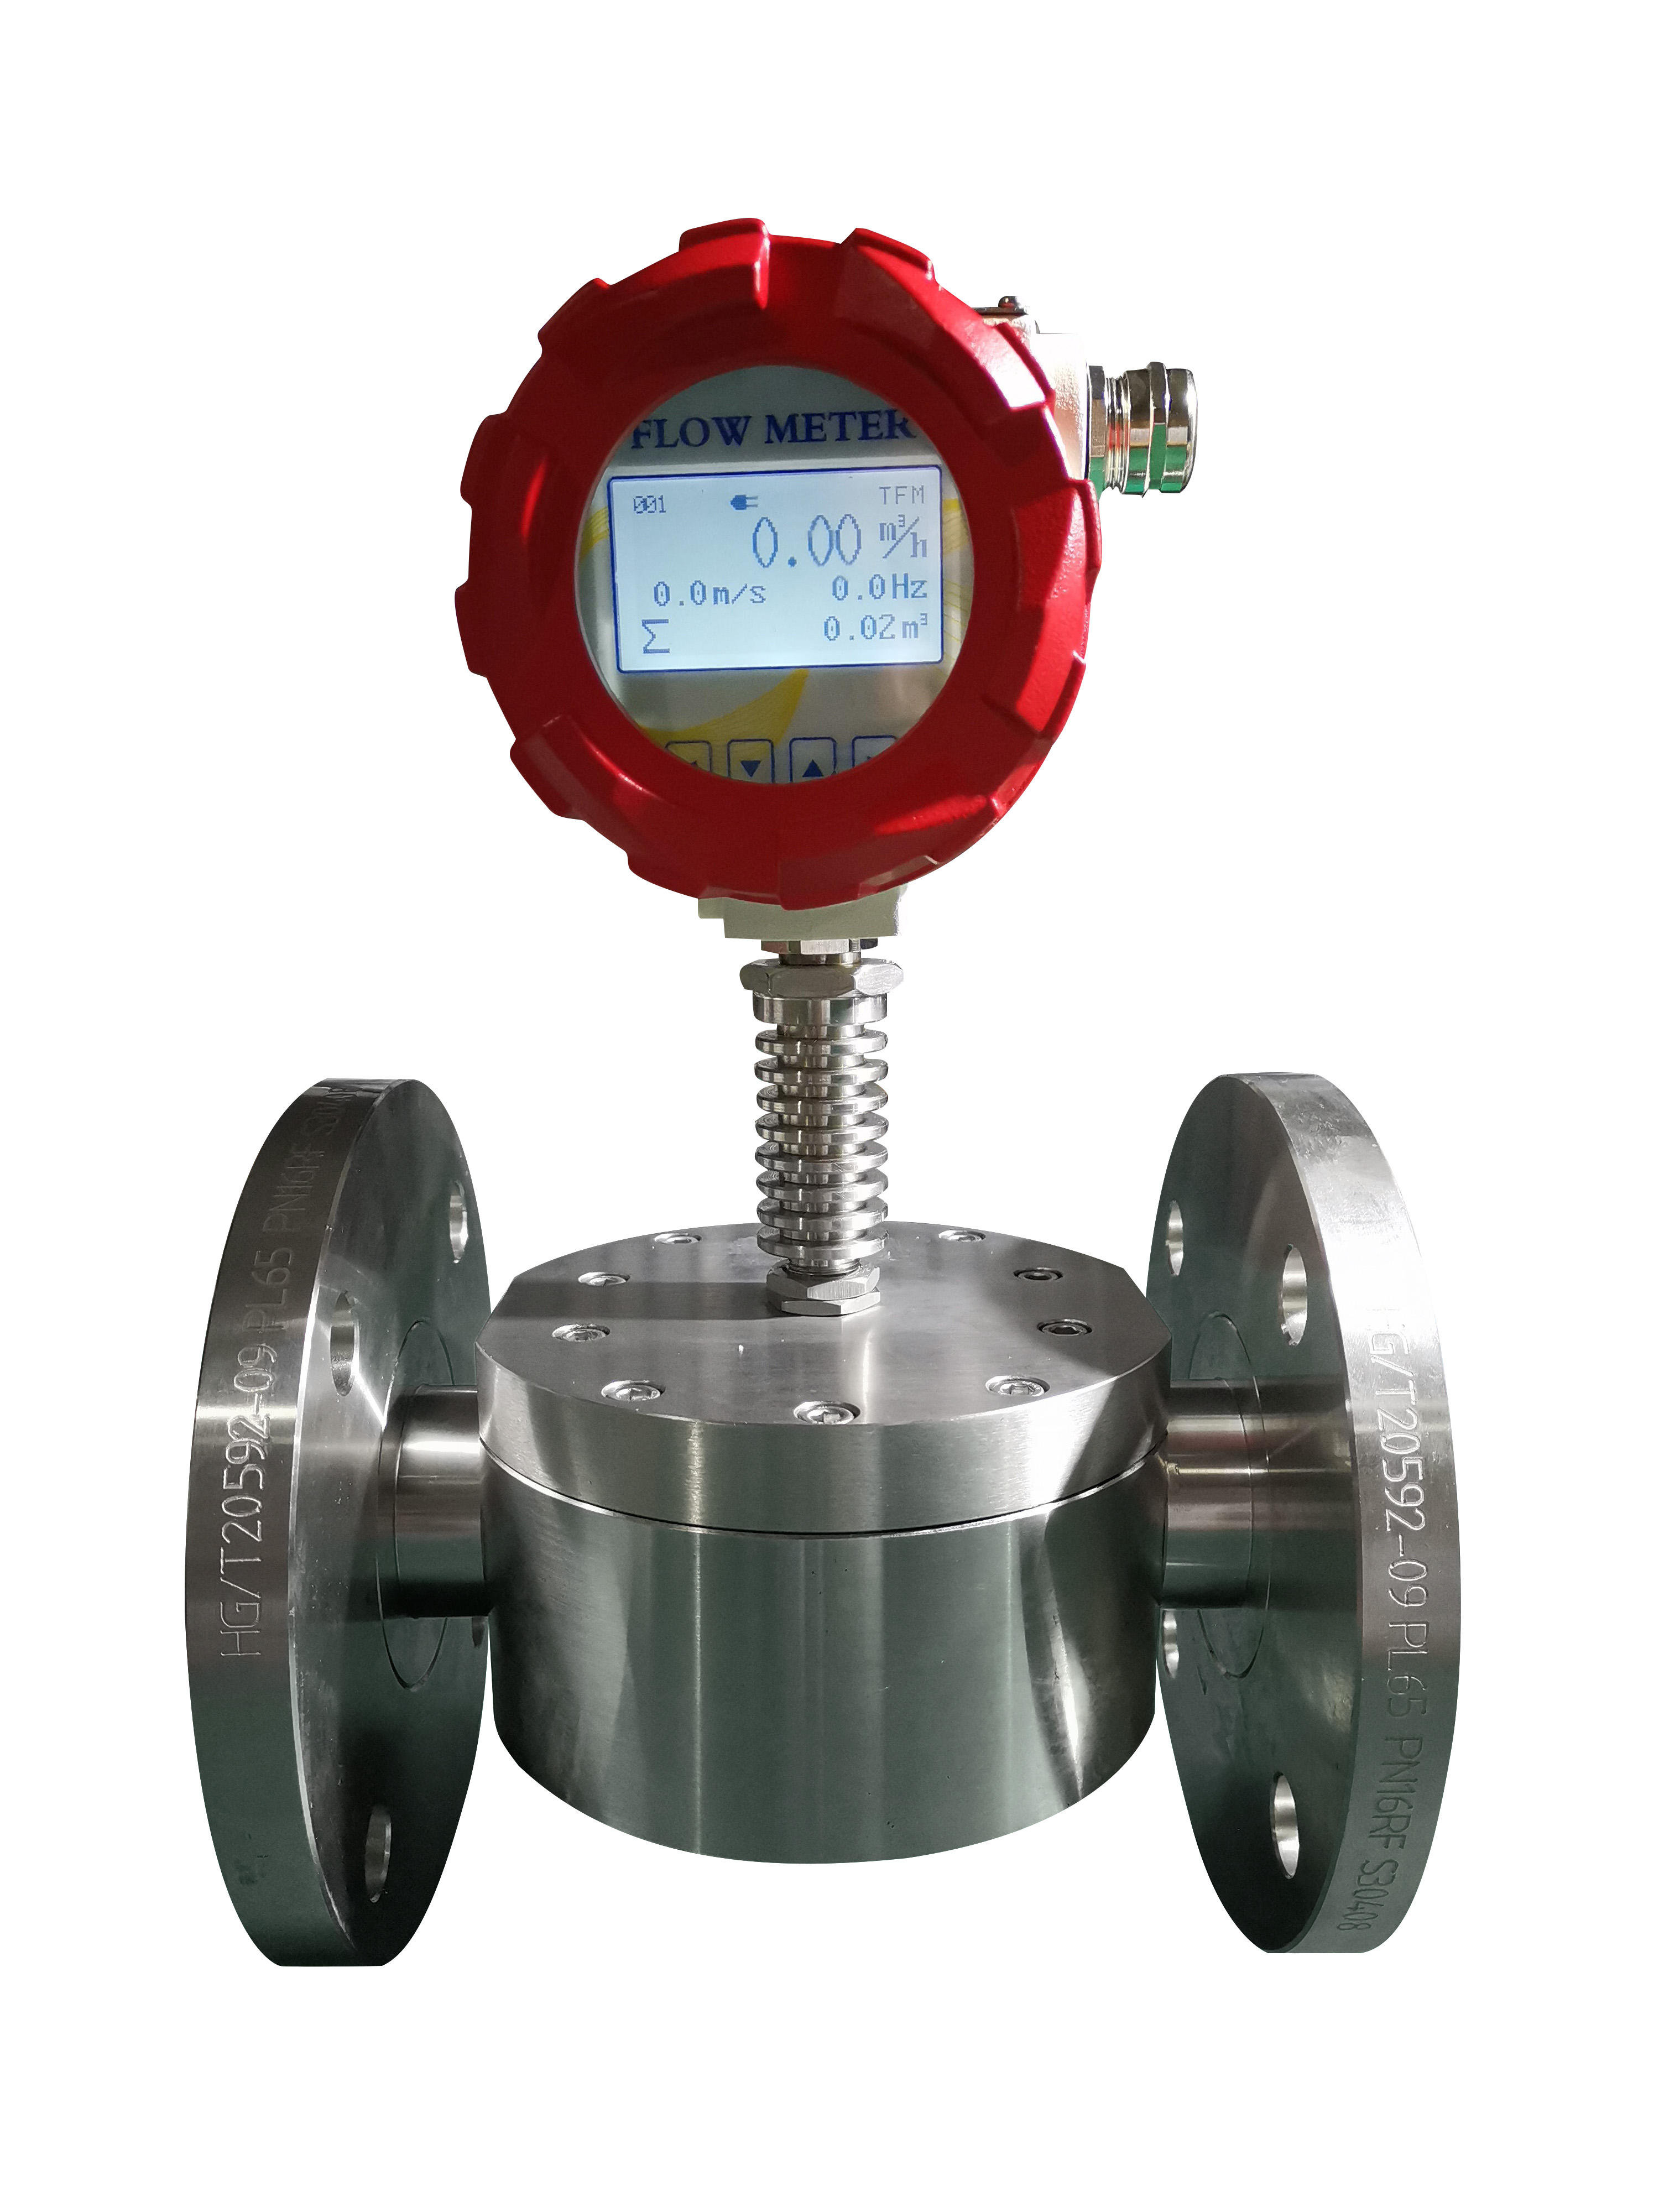 Oval gear flow meter and Coriolis Flow meter to be used as digital chemical flow meter